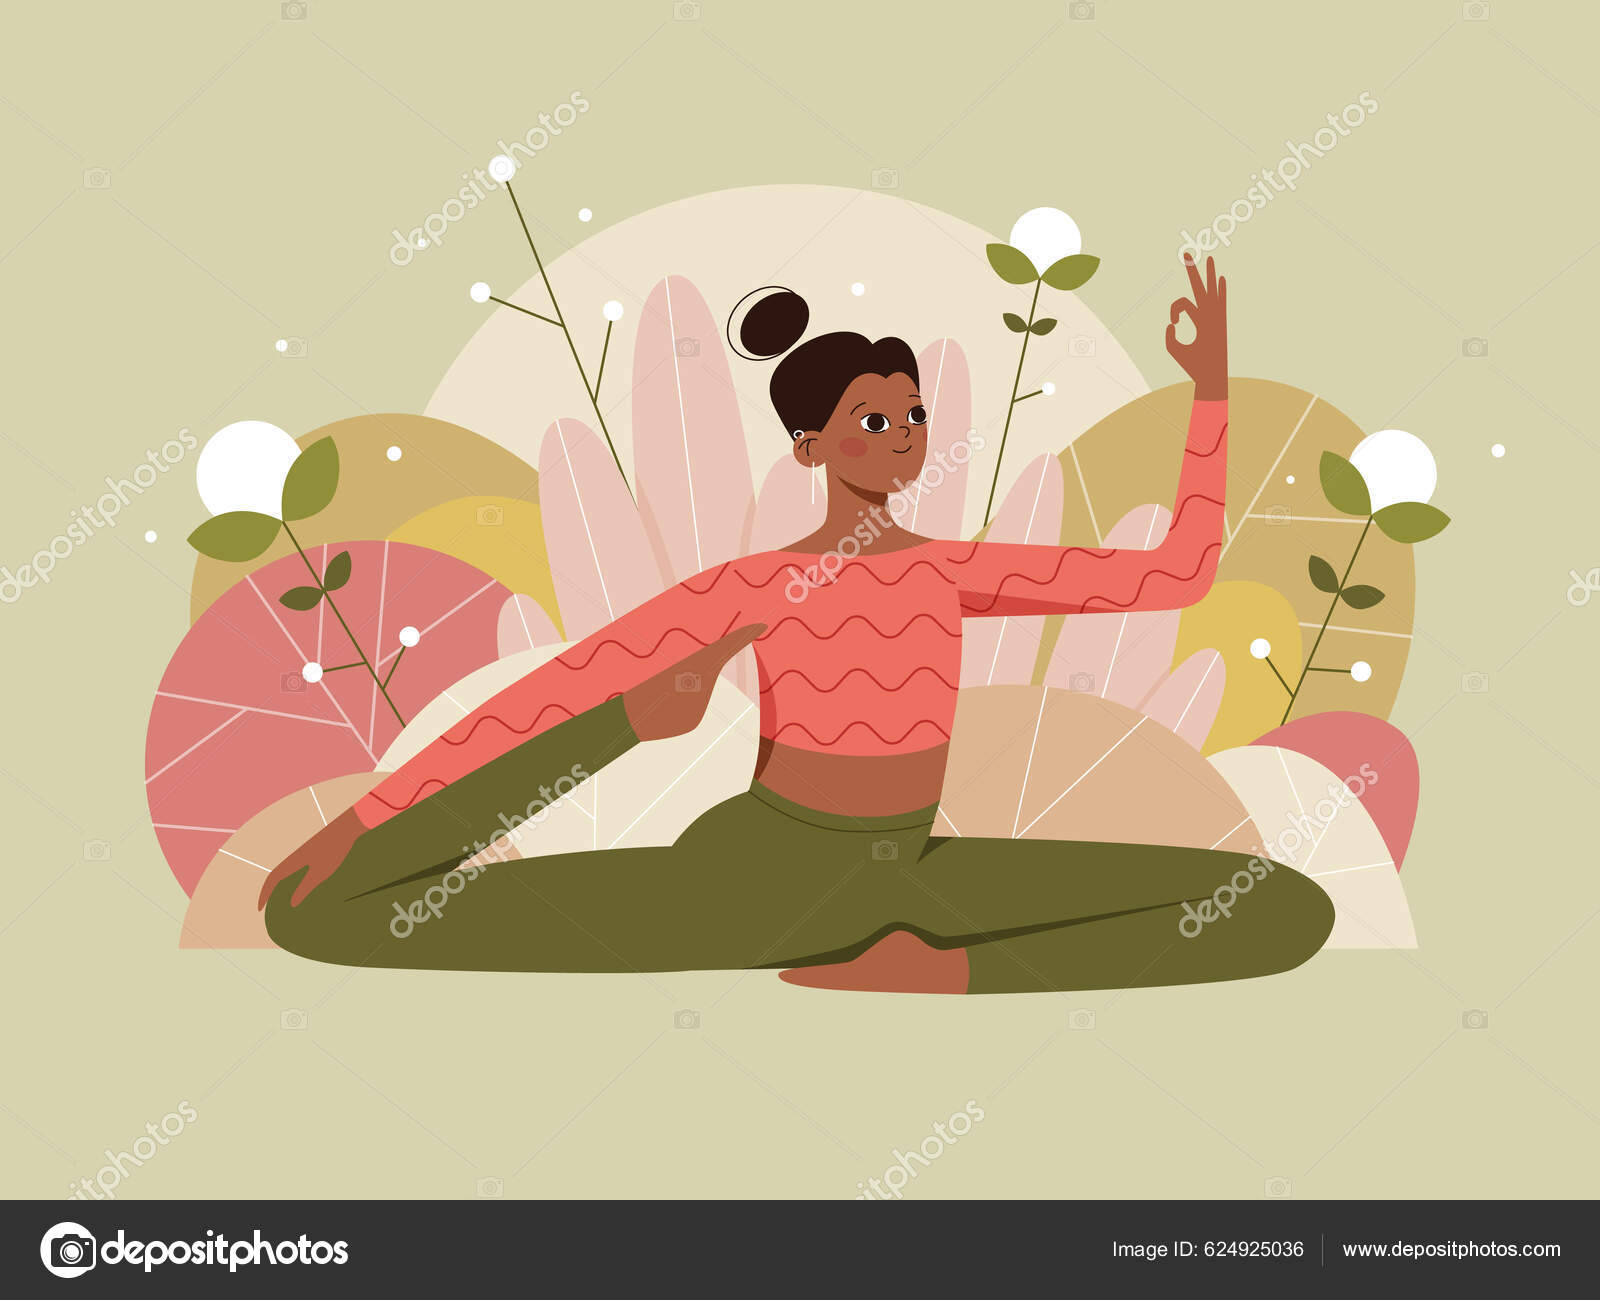 Estilo De Vida Saudável E Conceito De Yoga. Conjunto Com Mulheres